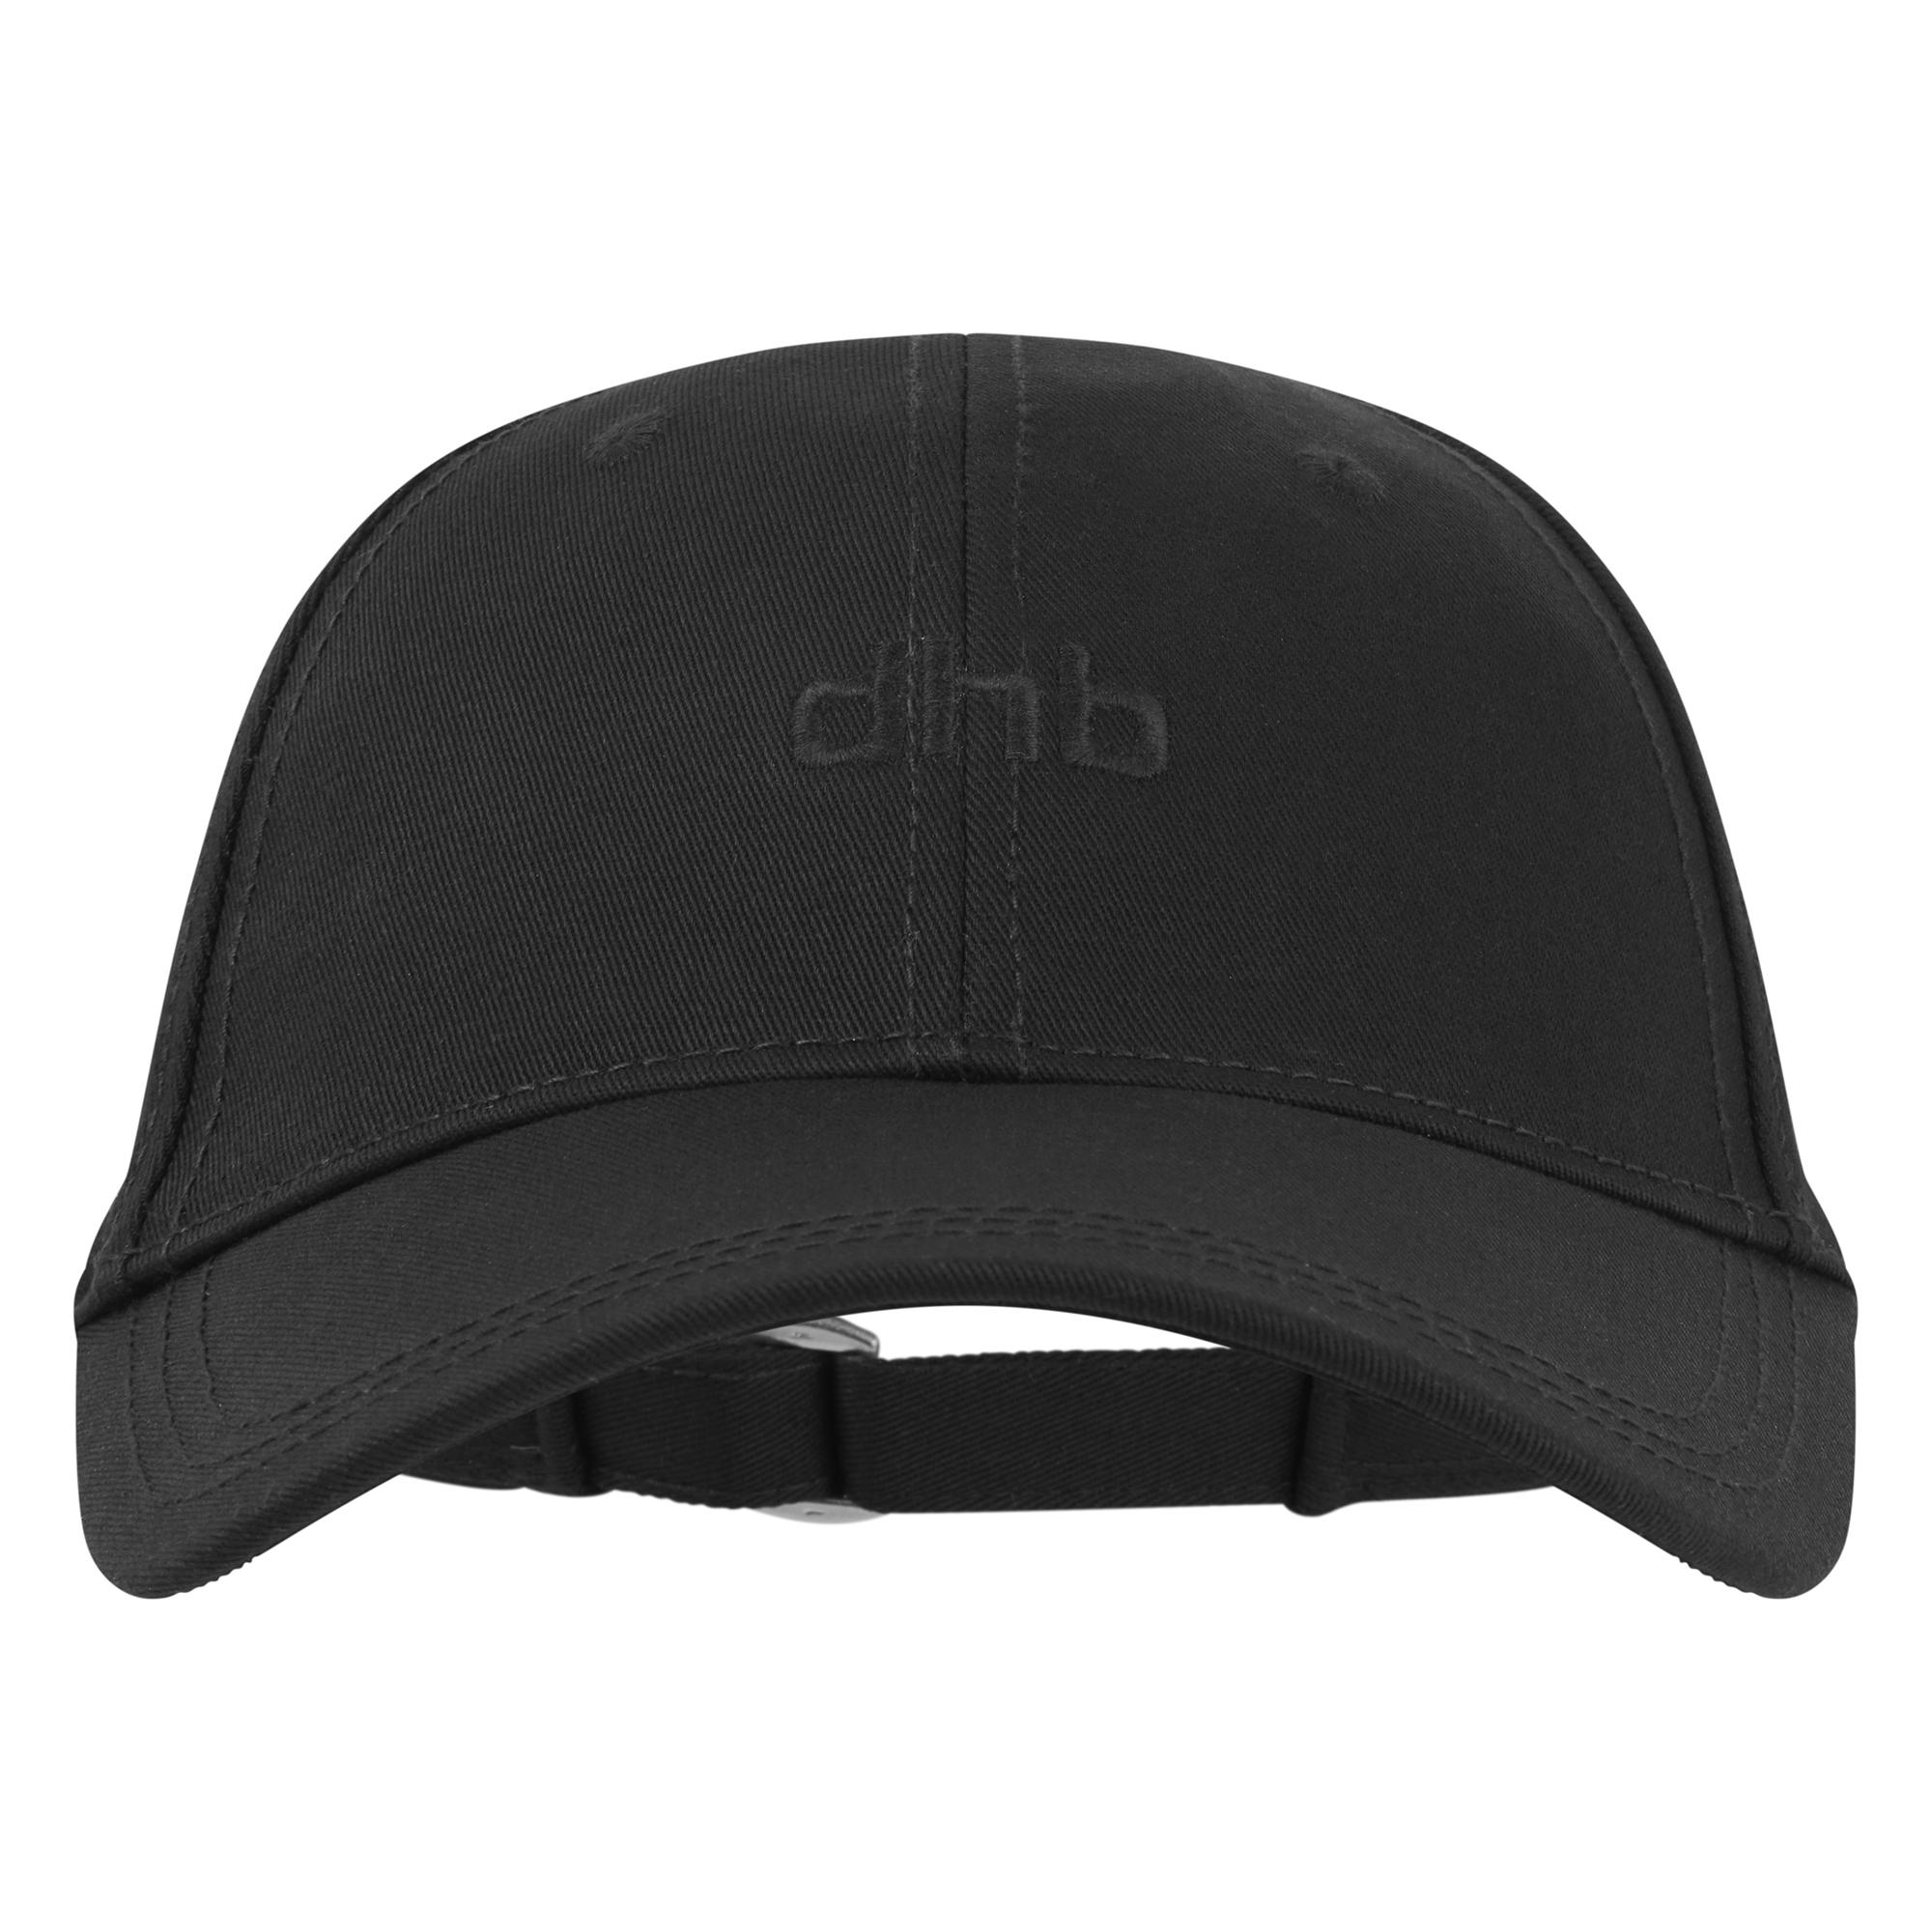 Dhb Training Cap - Black